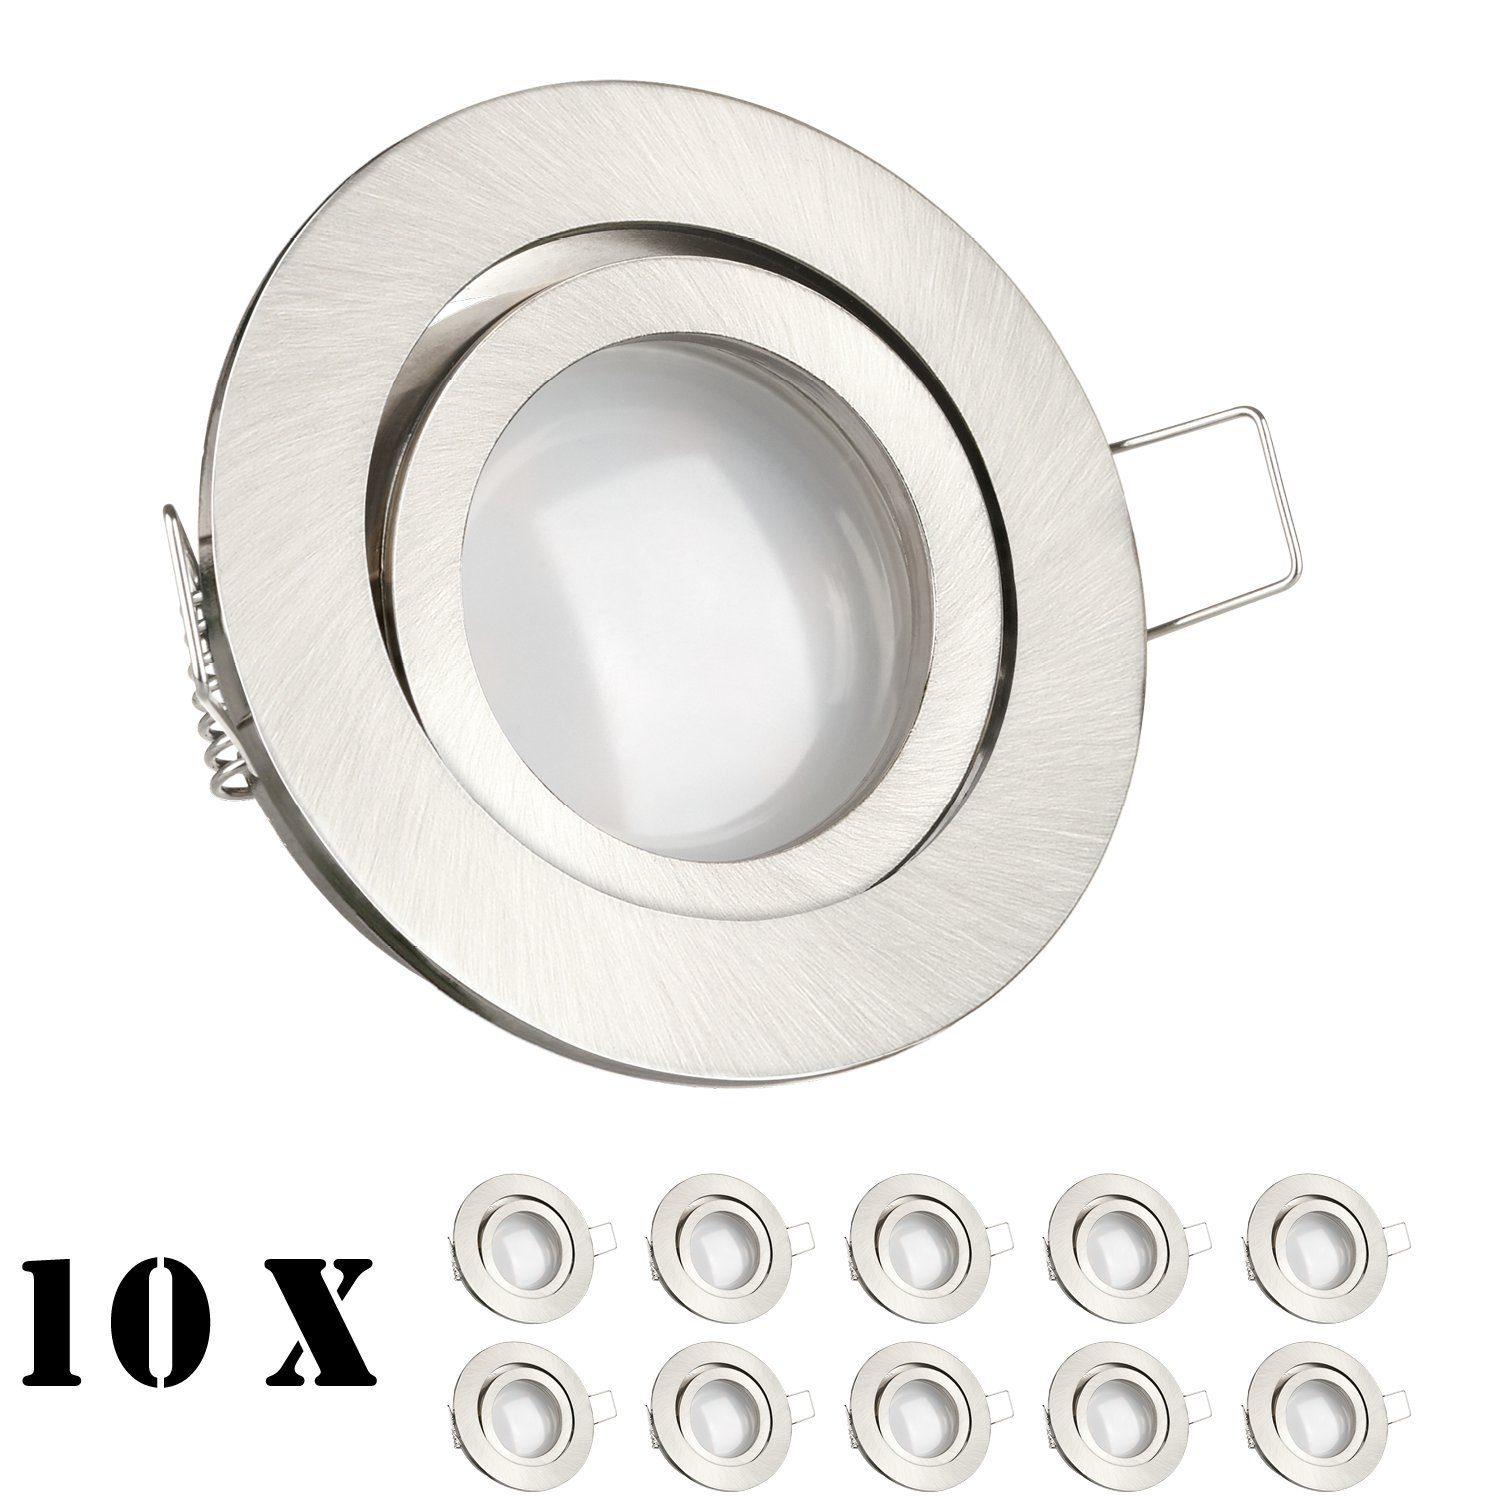 LEDANDO LED Einbaustrahler 10er LED Einbaustrahler Set Silber gebürstet mit LED GU10 Markenstrahl